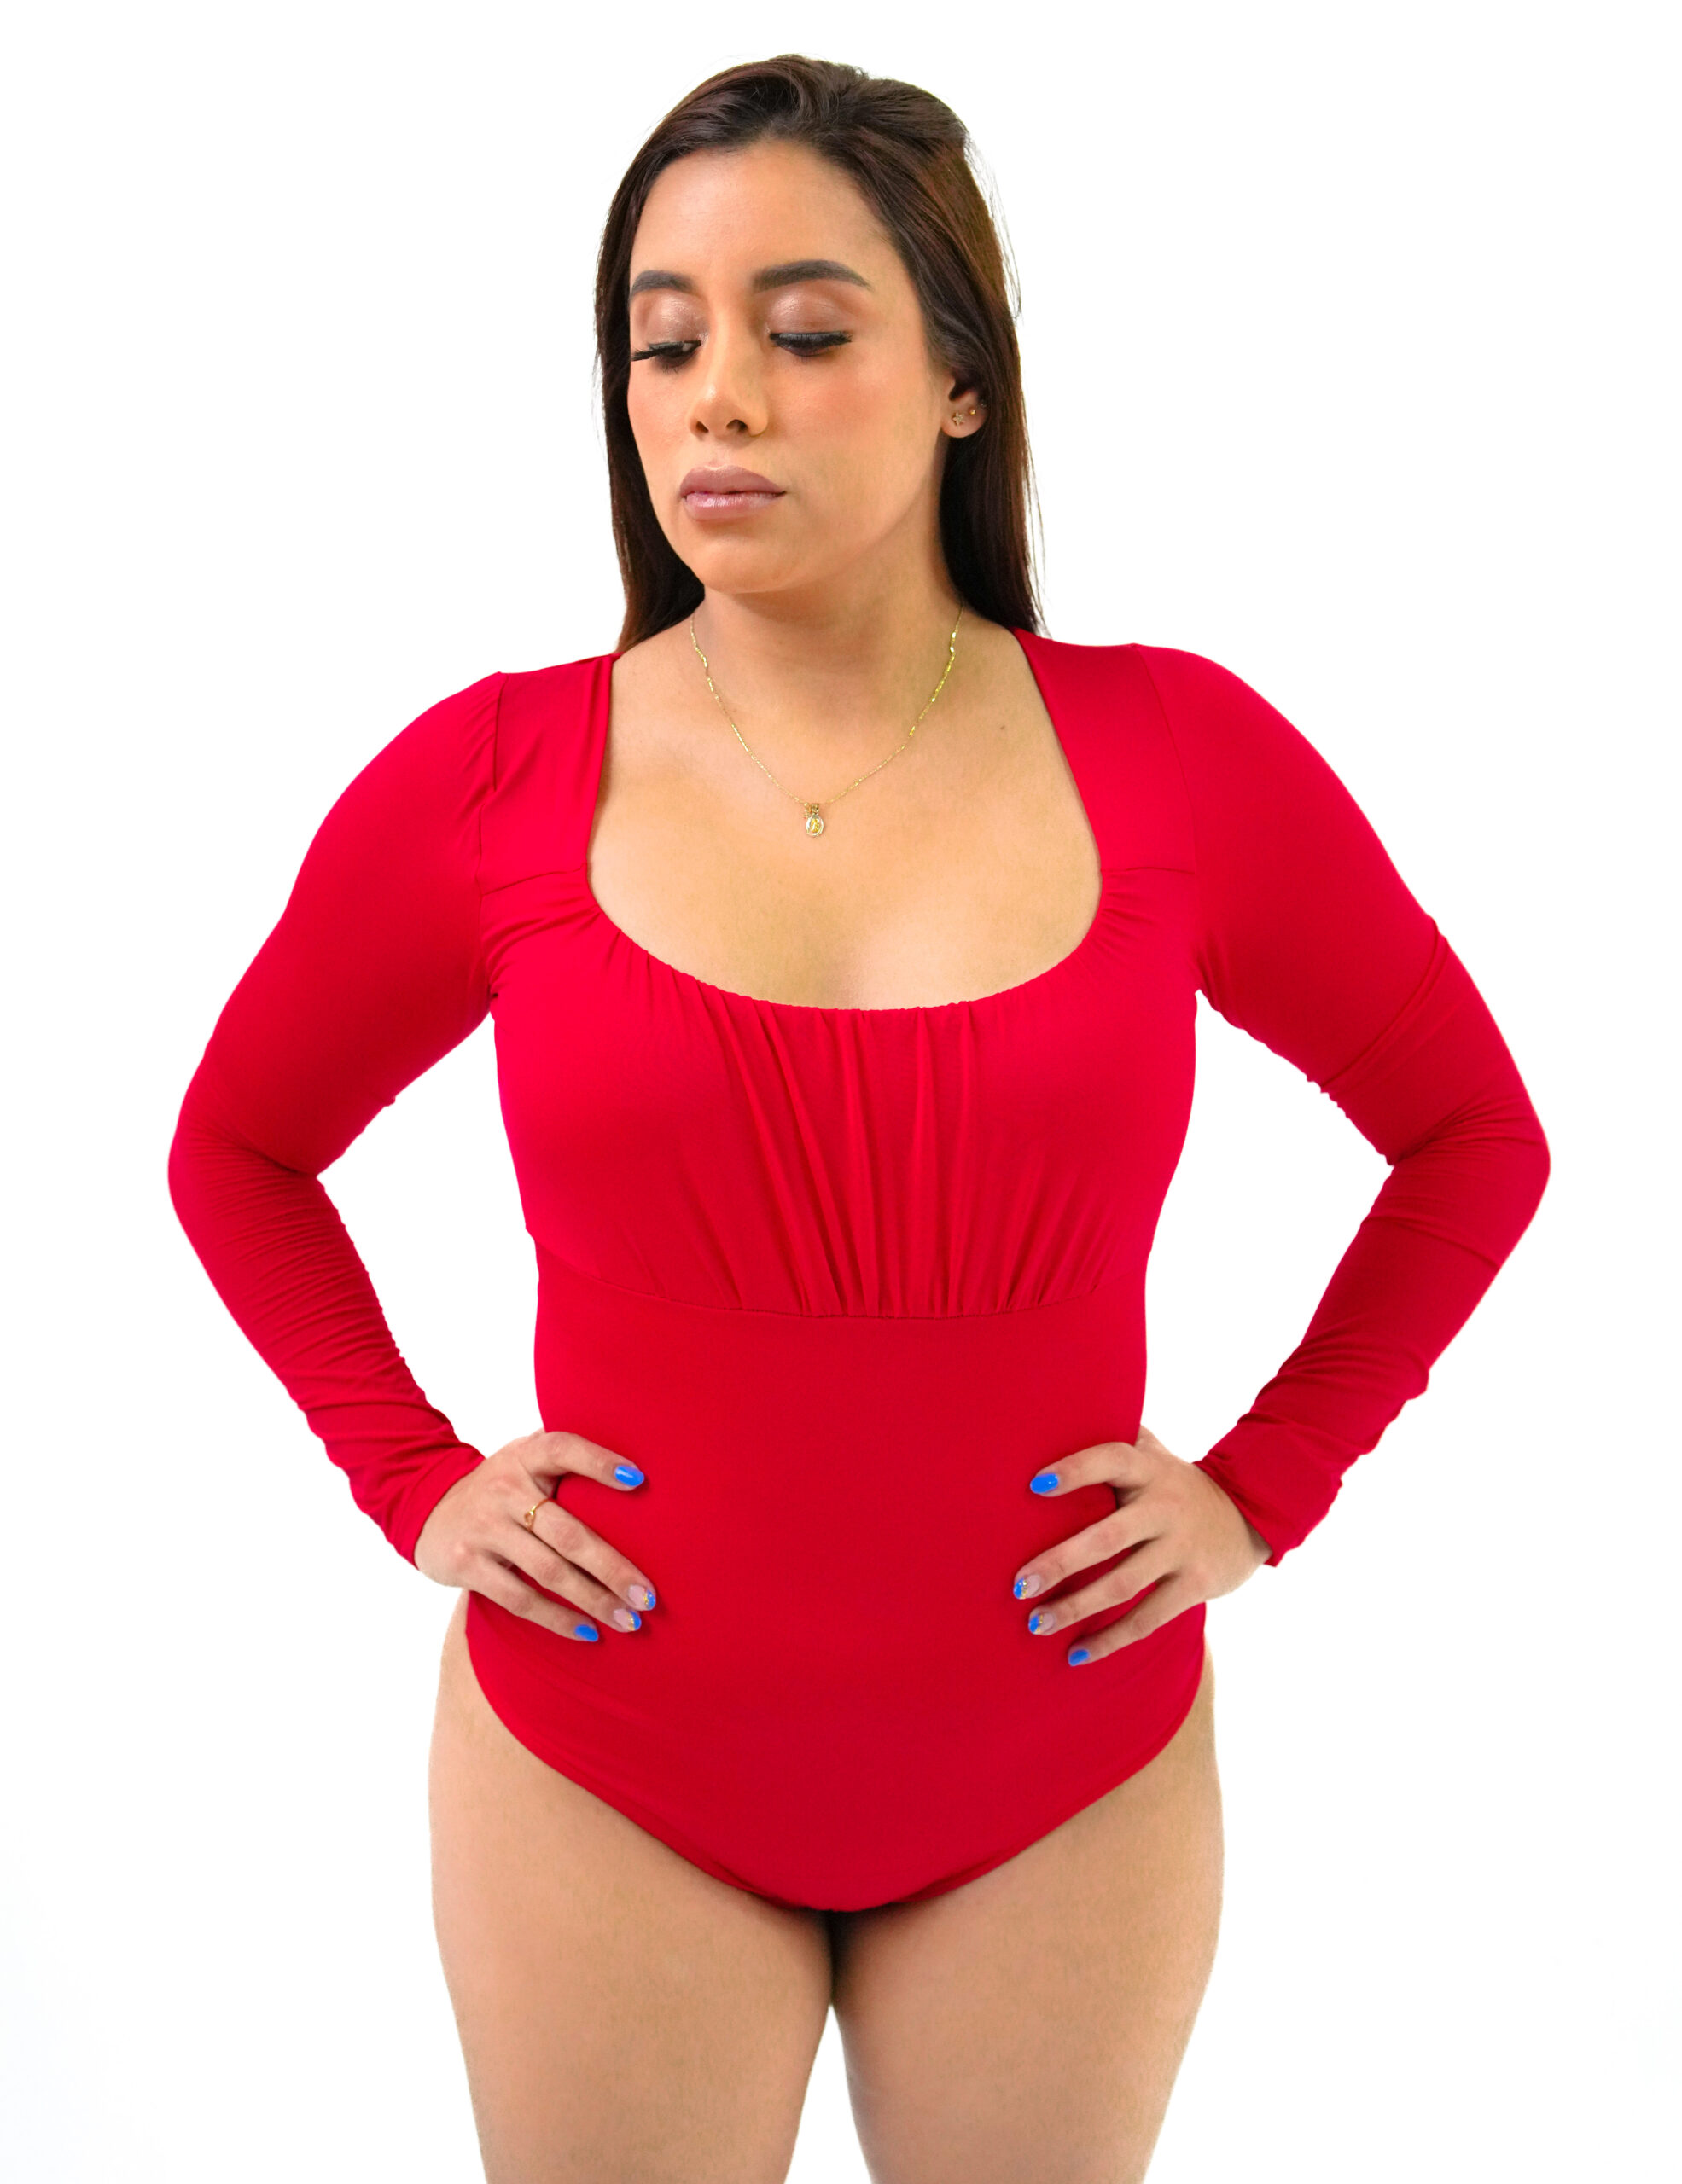 Red Rose Slim N Trim Women's High-Waist Body Shaper Tummy Control Slim